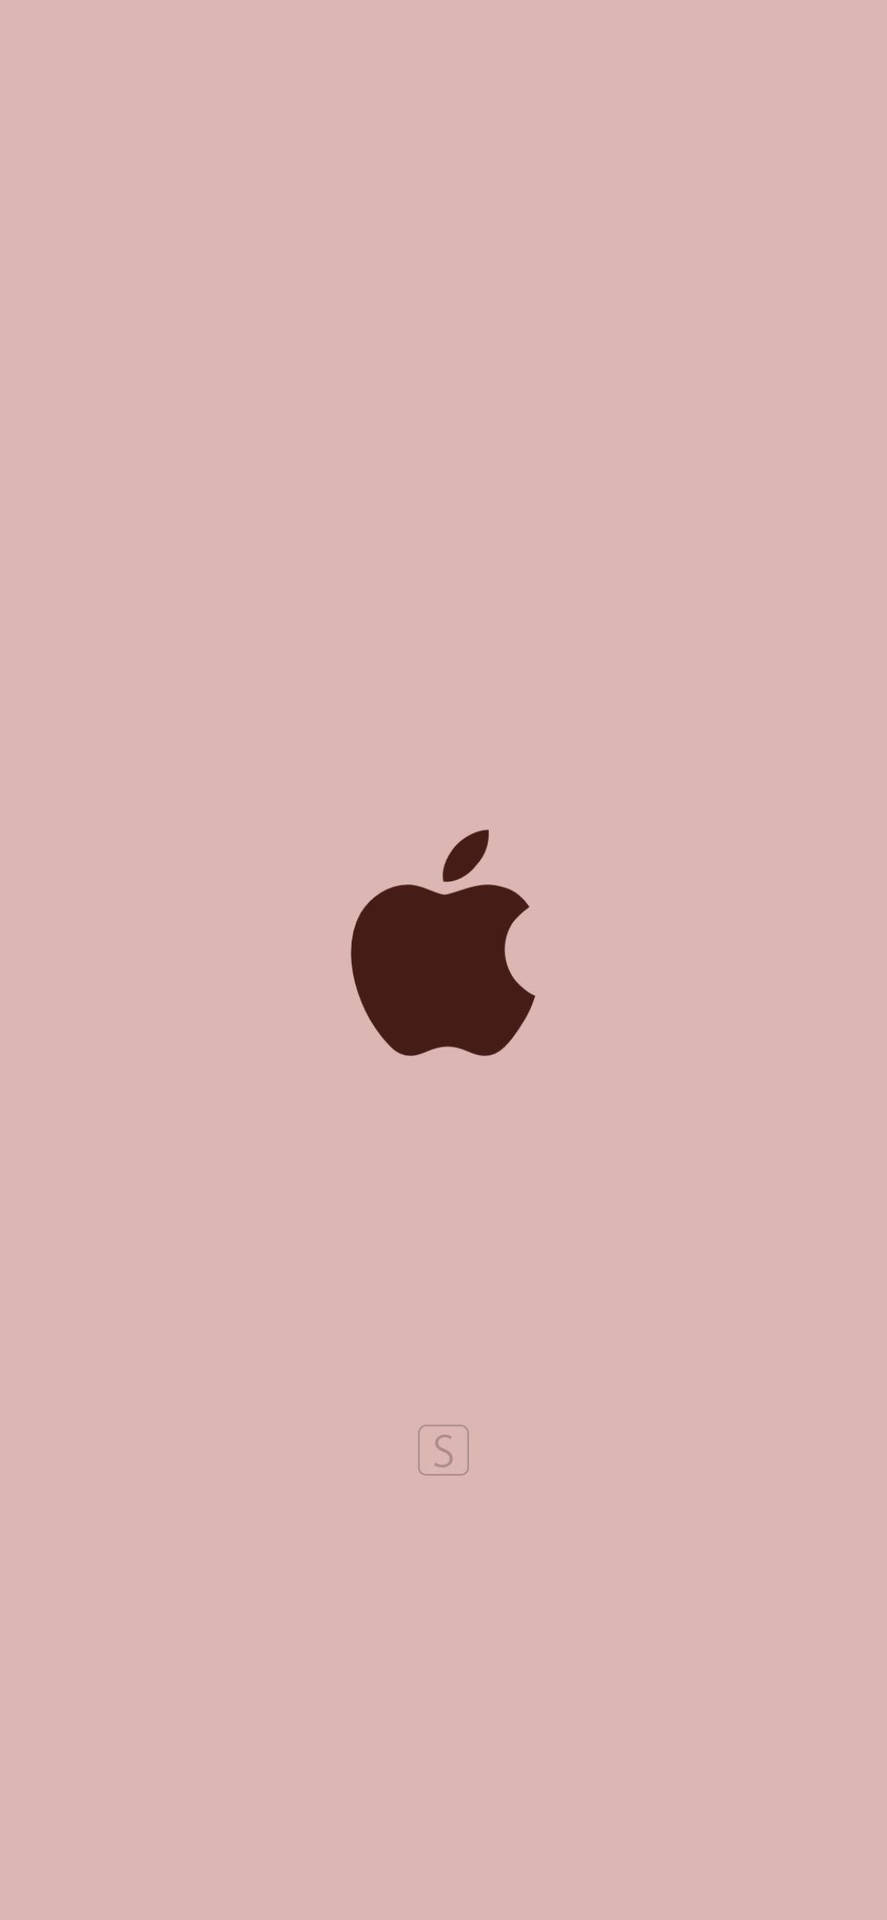 Hình nền Rose Gold cho iPad không chỉ là sự kết hợp độc đáo giữa màu hồng và kim loại mà còn là điểm nhấn tuyệt vời cho chiếc máy tính của bạn. Hãy lựa chọn hình nền với phong cách đặc biệt và thể hiện sự độc đáo của cá tính của mình.